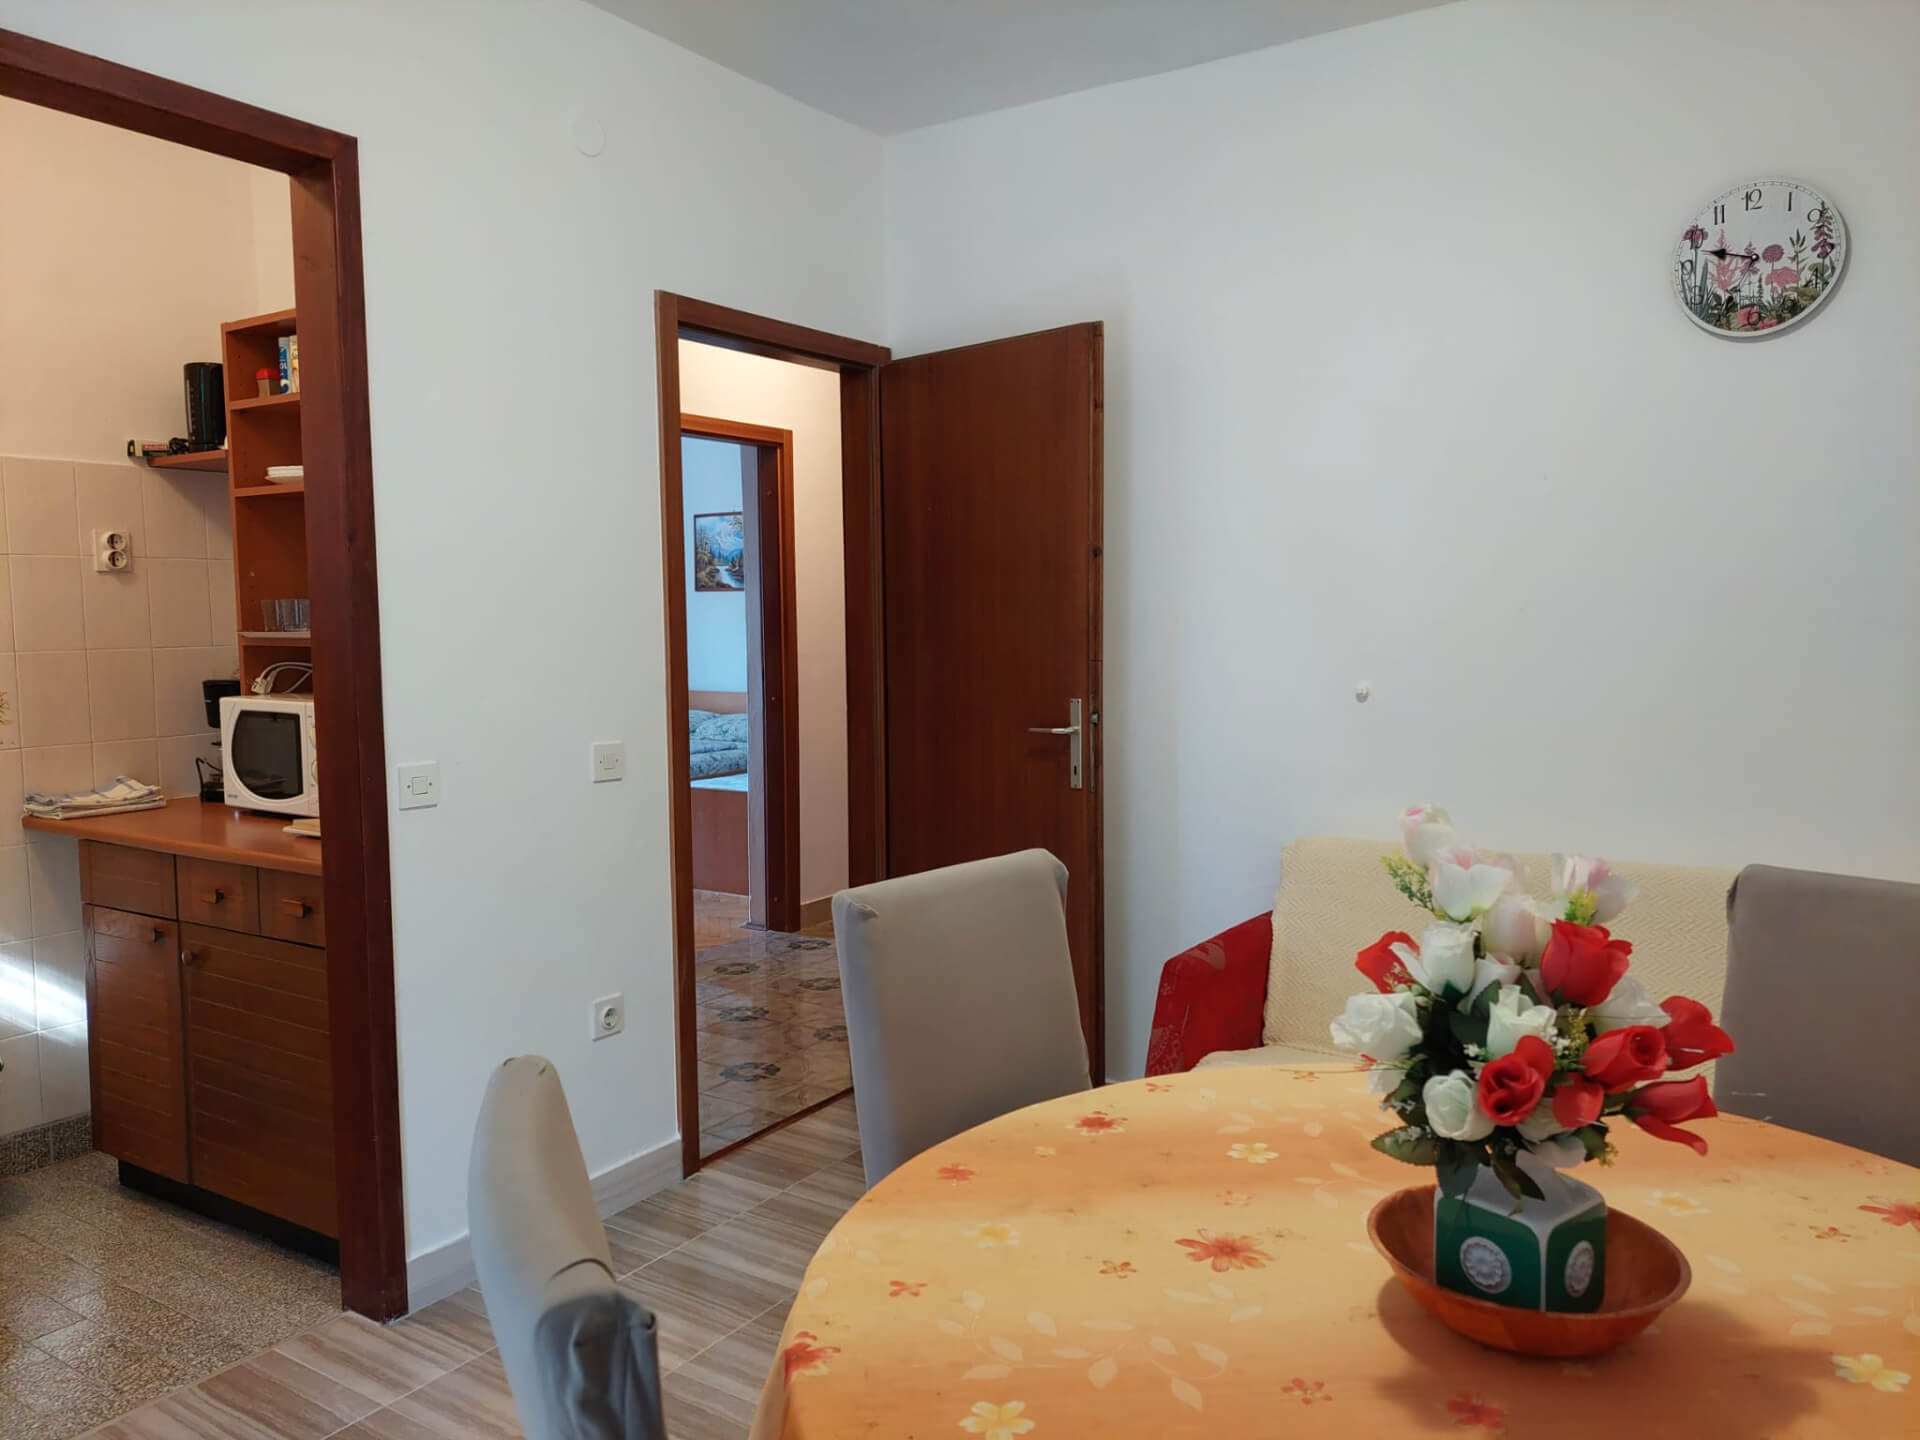 Apartment-2-dining-room-v2